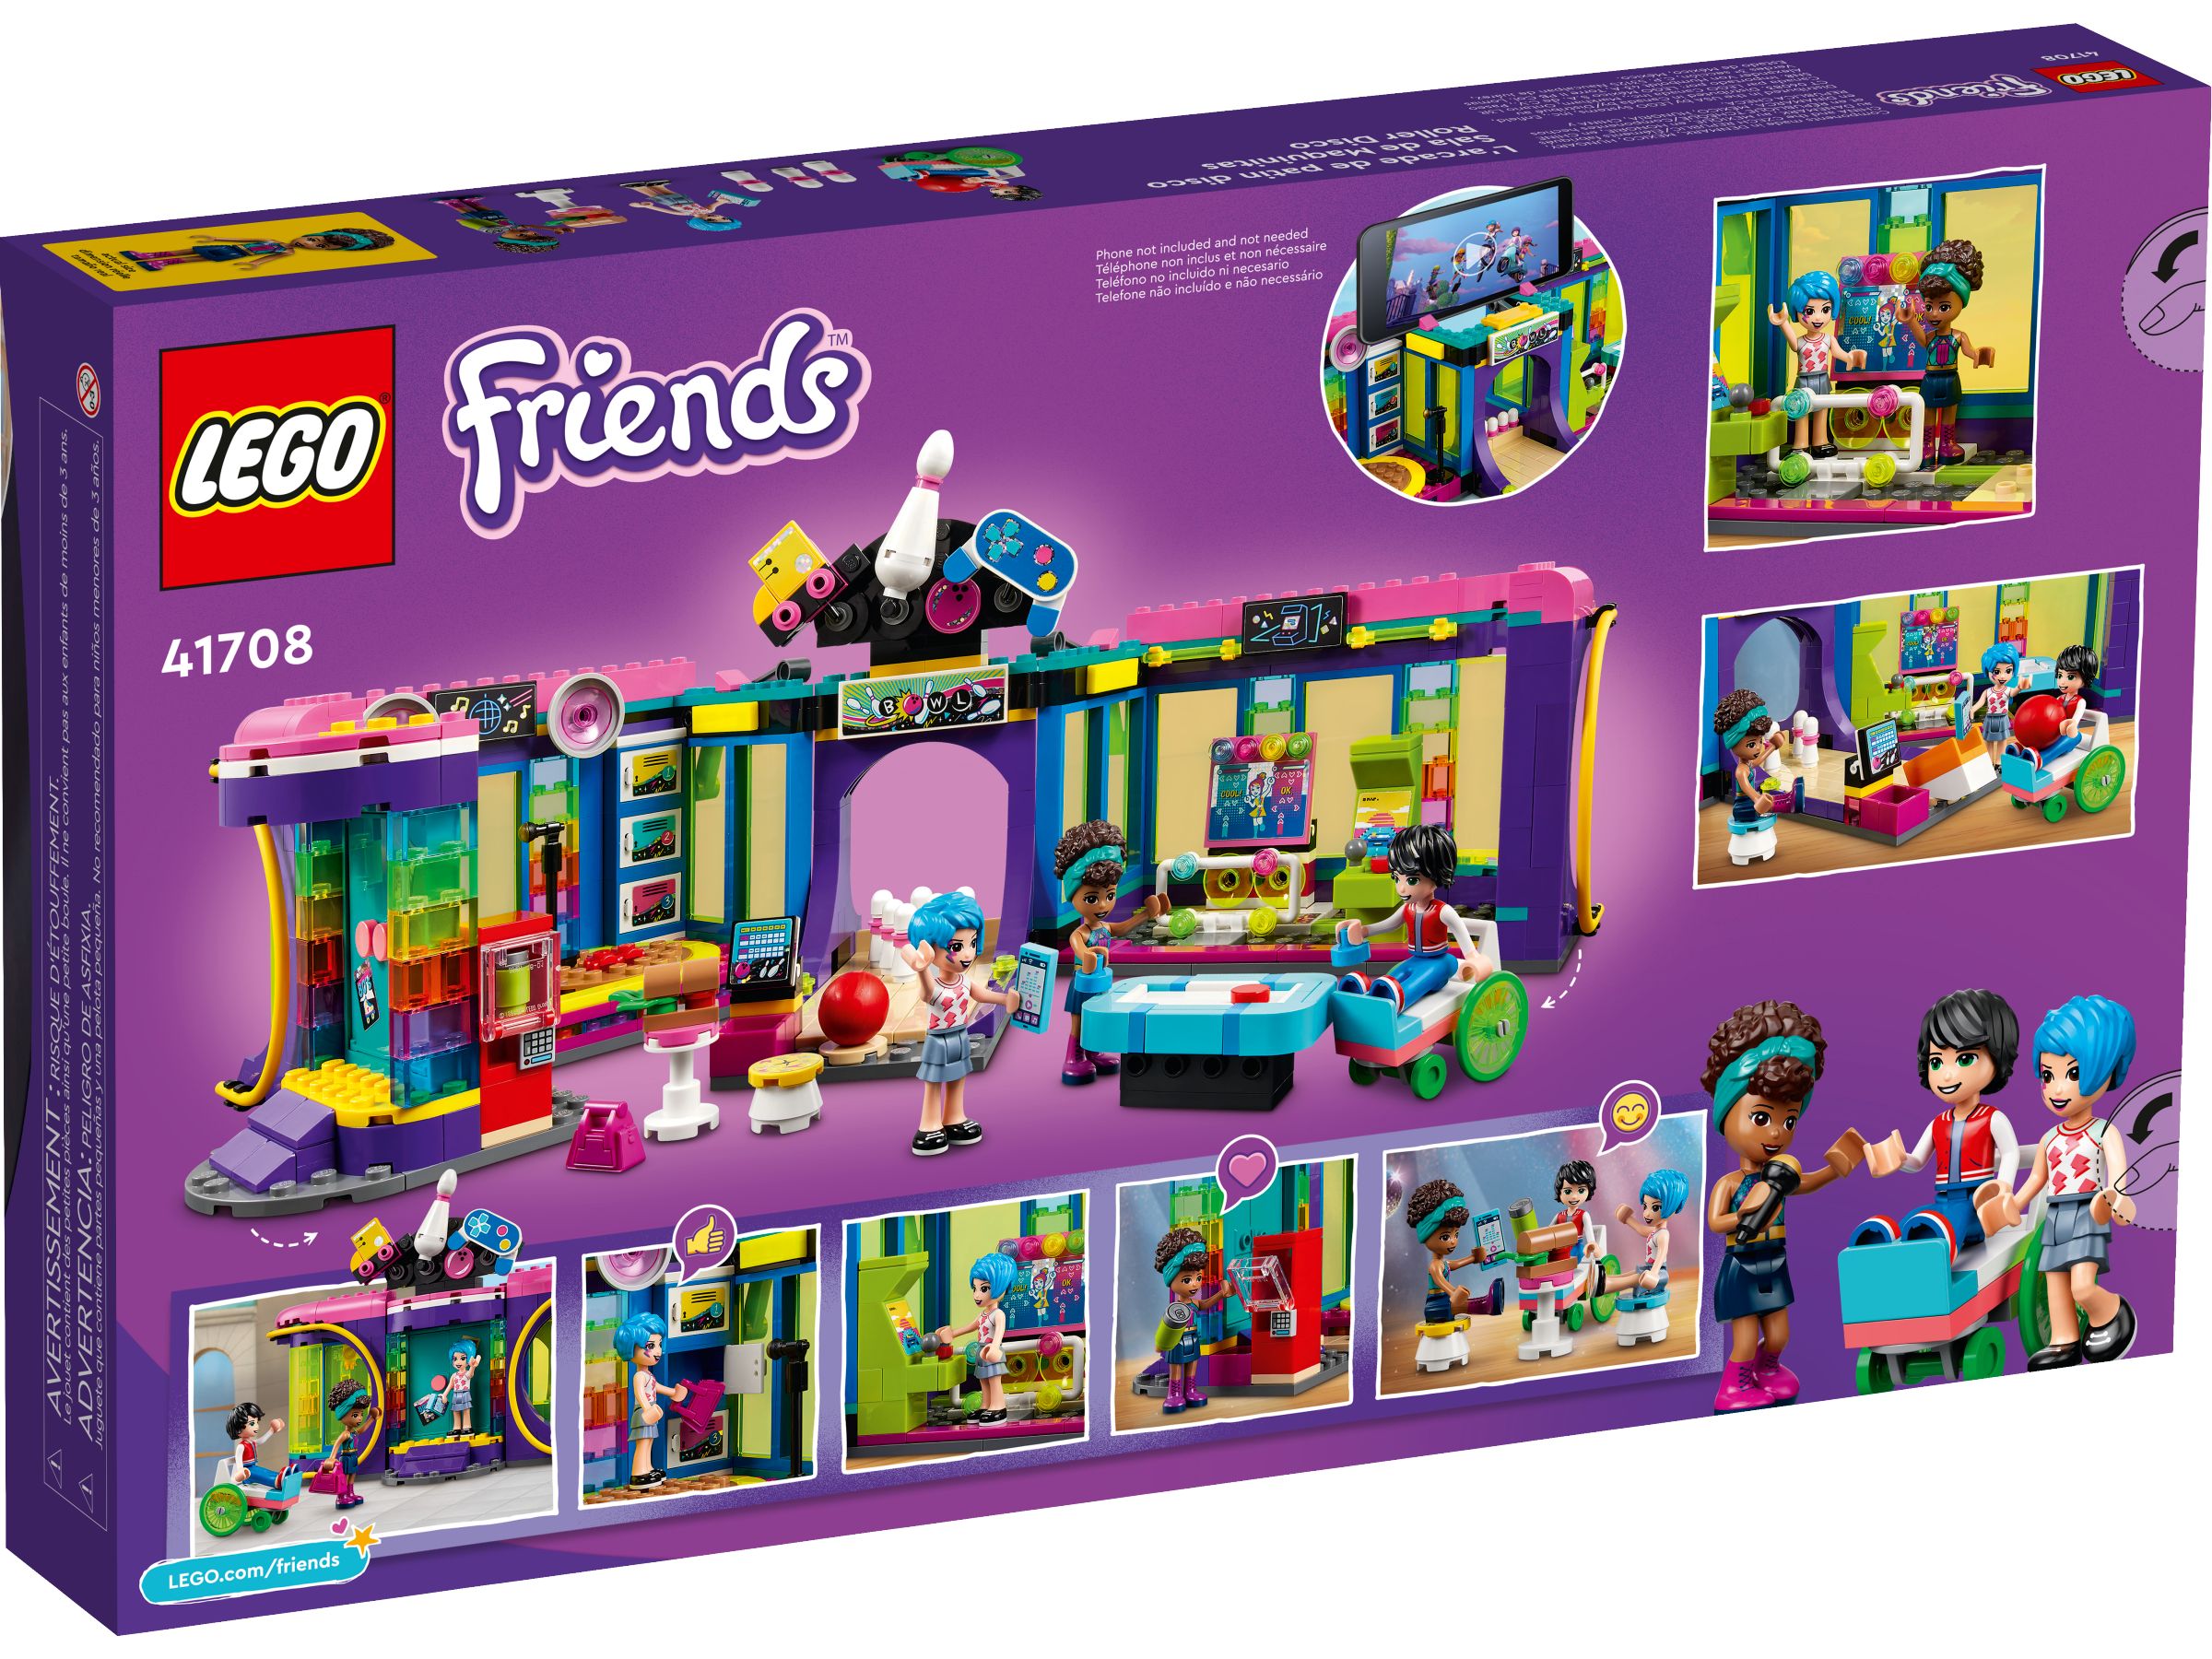 LEGO Friends 41708 Rollschuhdisco LEGO_41708_alt7.jpg